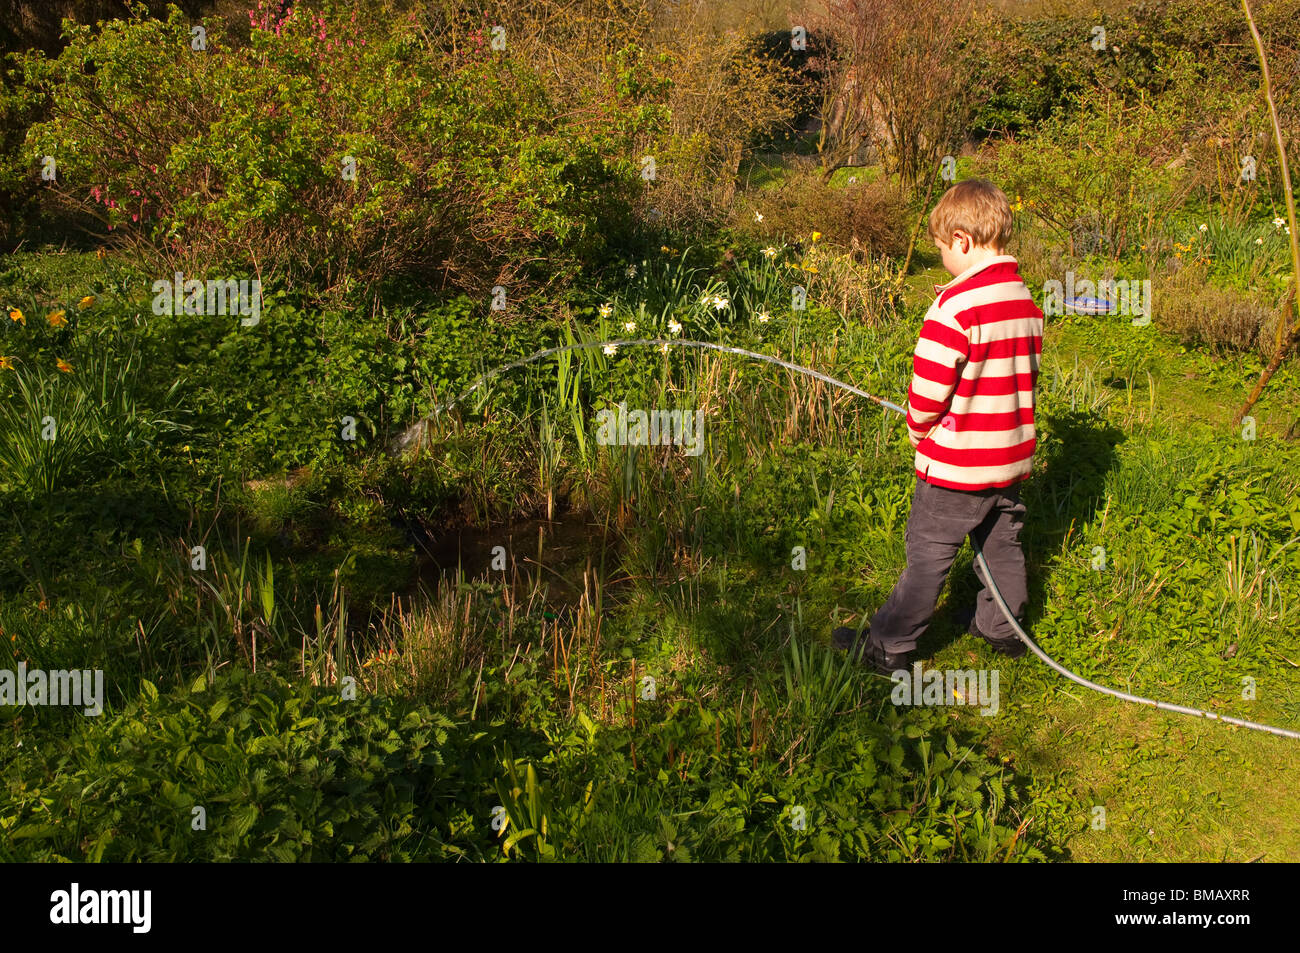 Ein MODEL Release Bild eines 6-jährigen Jungen füllen einen Teich mit einem Schlauch Gartenschlauch in England, Großbritannien, Vereinigtes Königreich Stockfoto